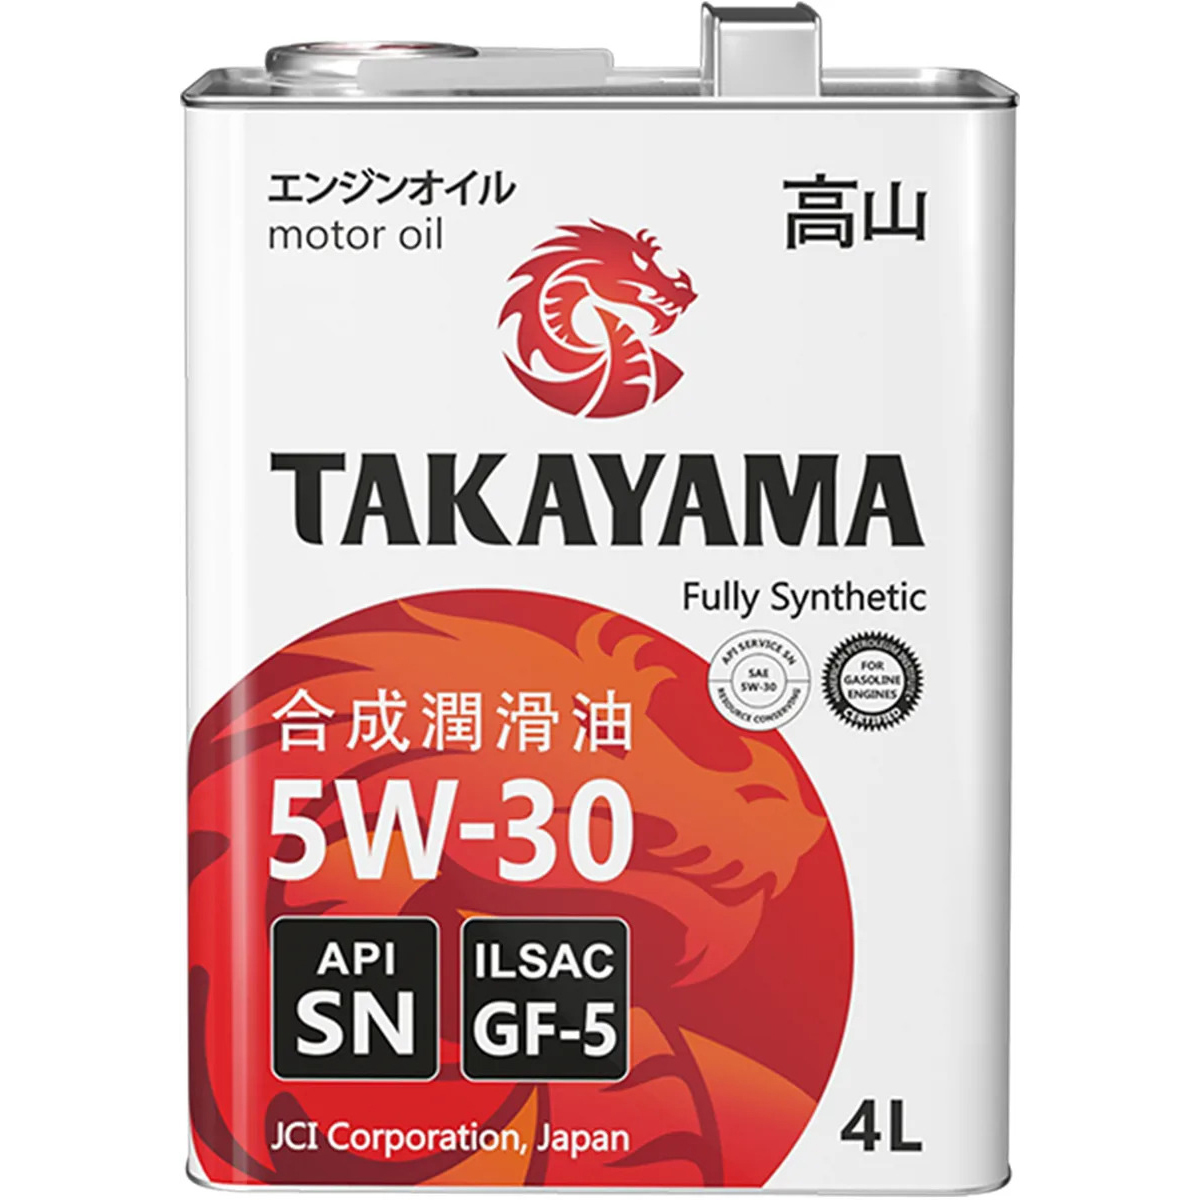 Масла api sn gf 5. Takayama 5w30 SN gf-5. Такаяма 5w30 ILSAC 4л 605043. Takayama SAE 5w-30, ILSAC gf-5, API SN (бочка 200л). Моторное масло Takayama 5w-40 синтетическое 4 л.